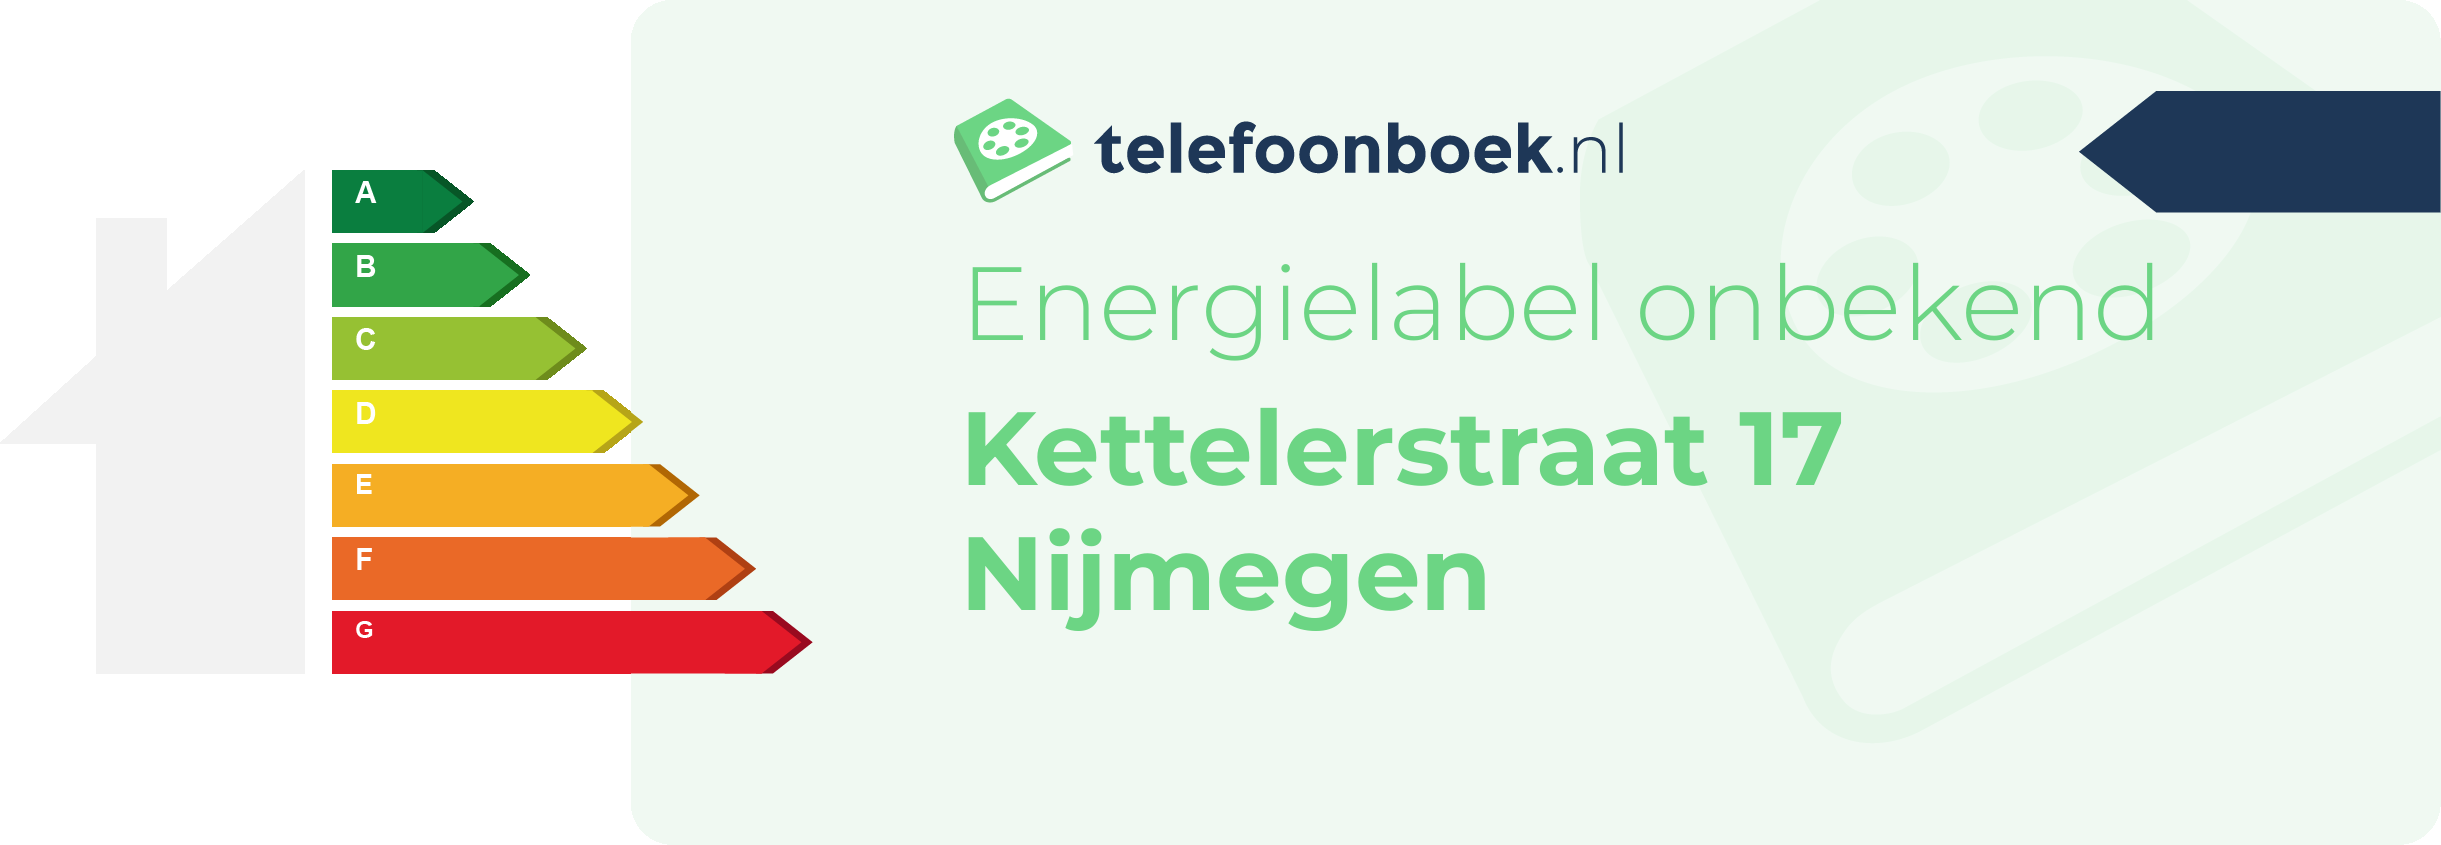 Energielabel Kettelerstraat 17 Nijmegen